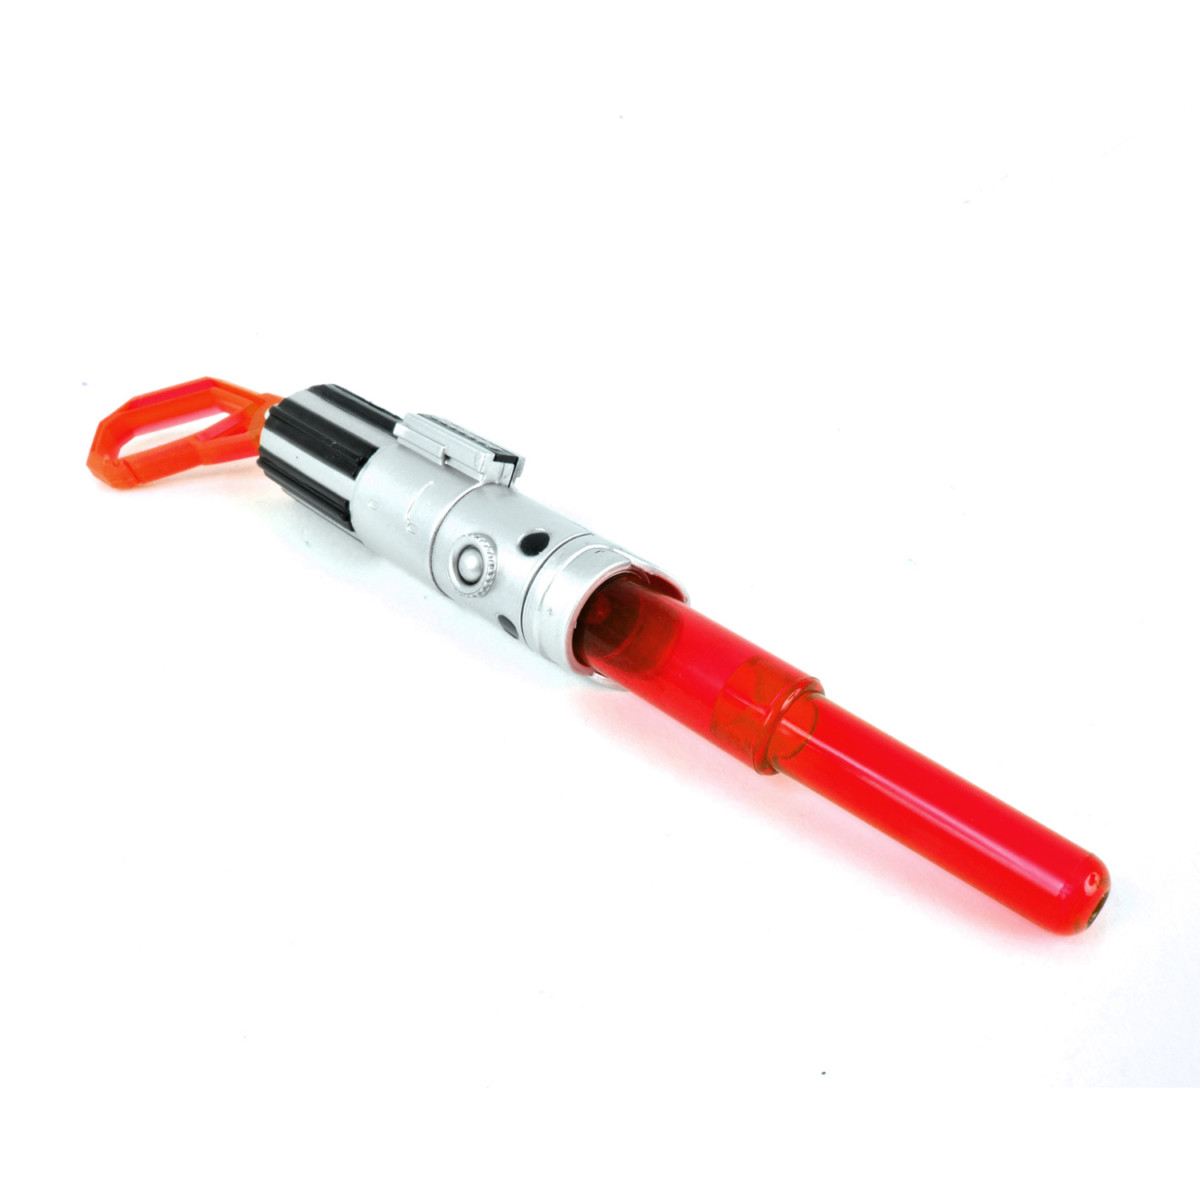 Porte clefs et lampe torche Star Wars : Sabre laser rouge